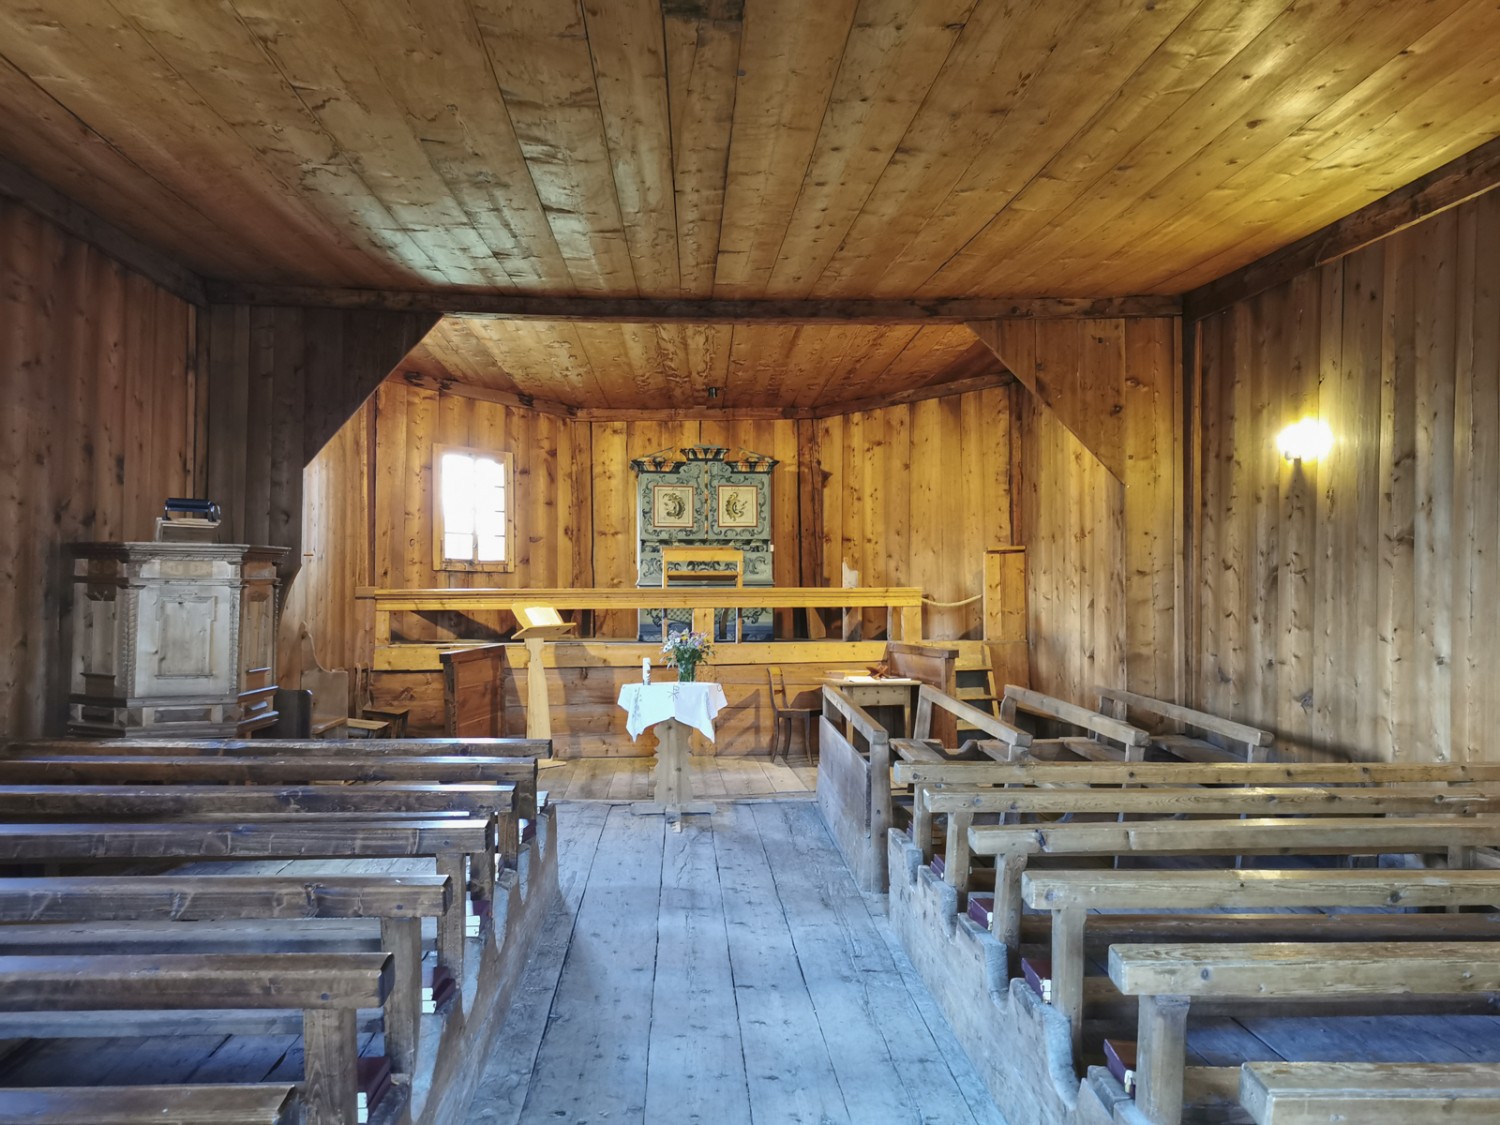  
La petite église d’Obermutten vaut le détour. C’est le seul édifice religieux de Suisse entièrement construit en bois. Photo: Andreas Staeger